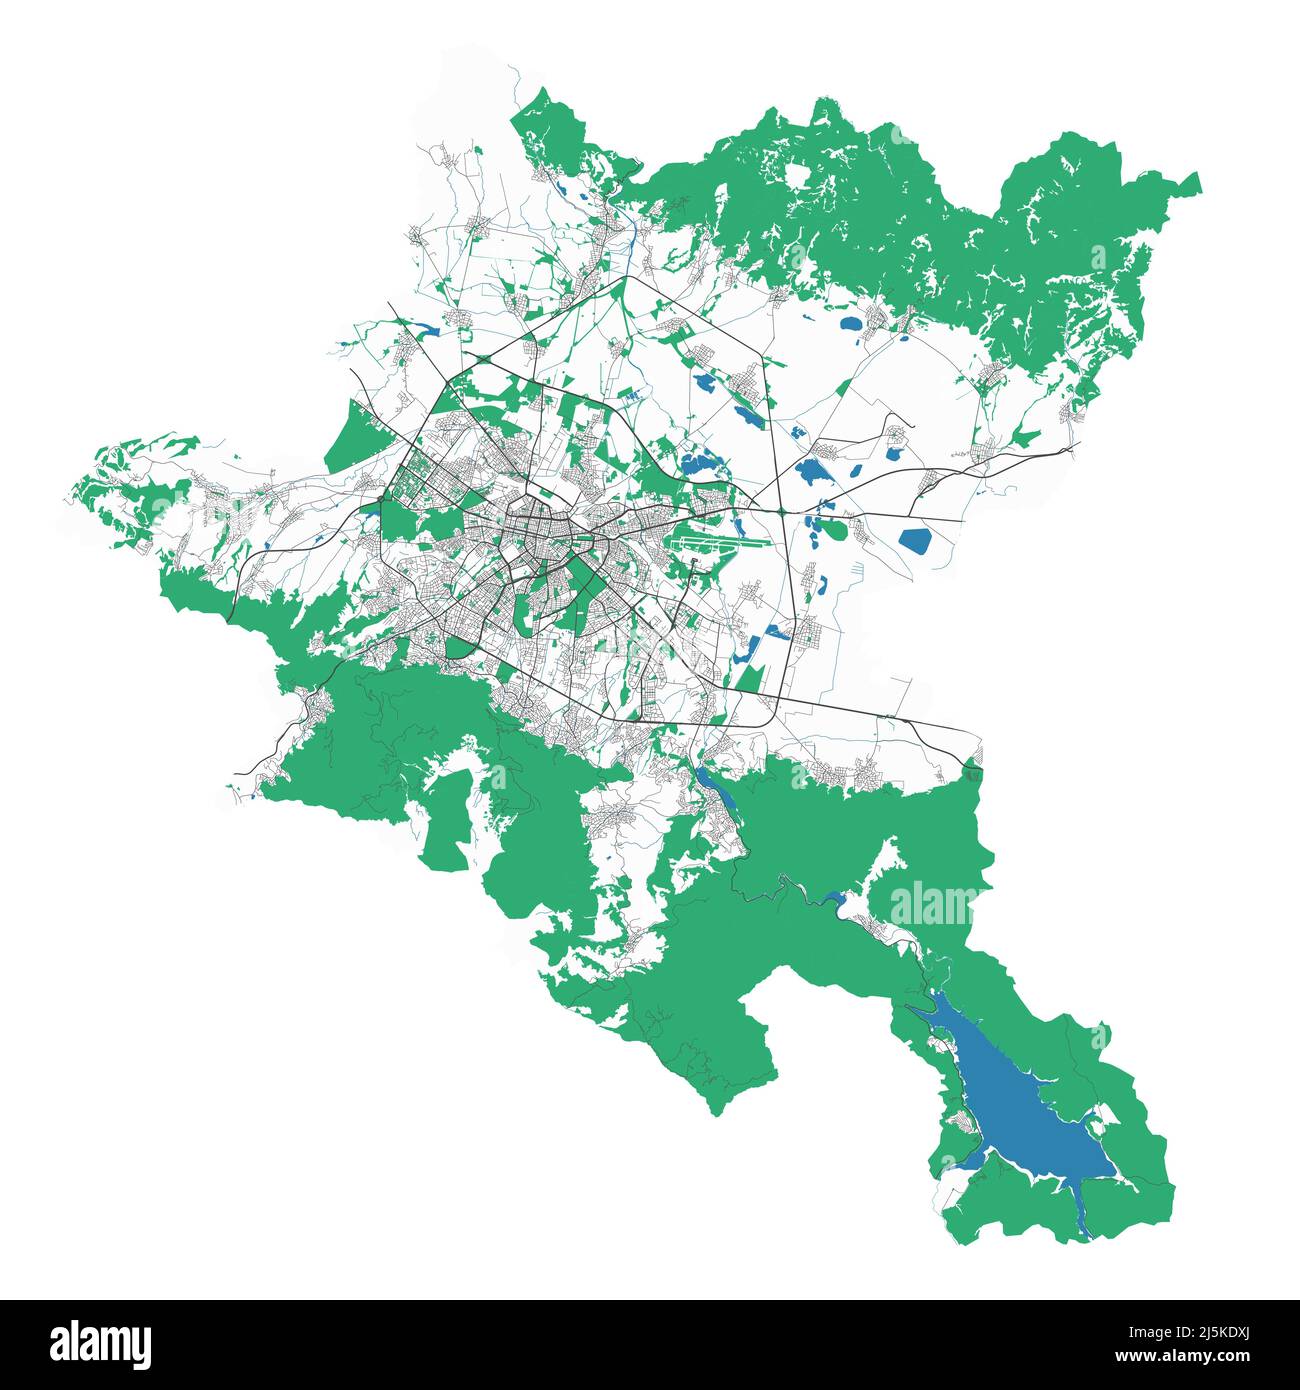 Mappa di Sofia. Mappa dettagliata dell'area amministrativa della città di Sofia. Panorama urbano. Illustrazione vettoriale senza royalty. Mappa del profilo con autostrade, strade, r Illustrazione Vettoriale